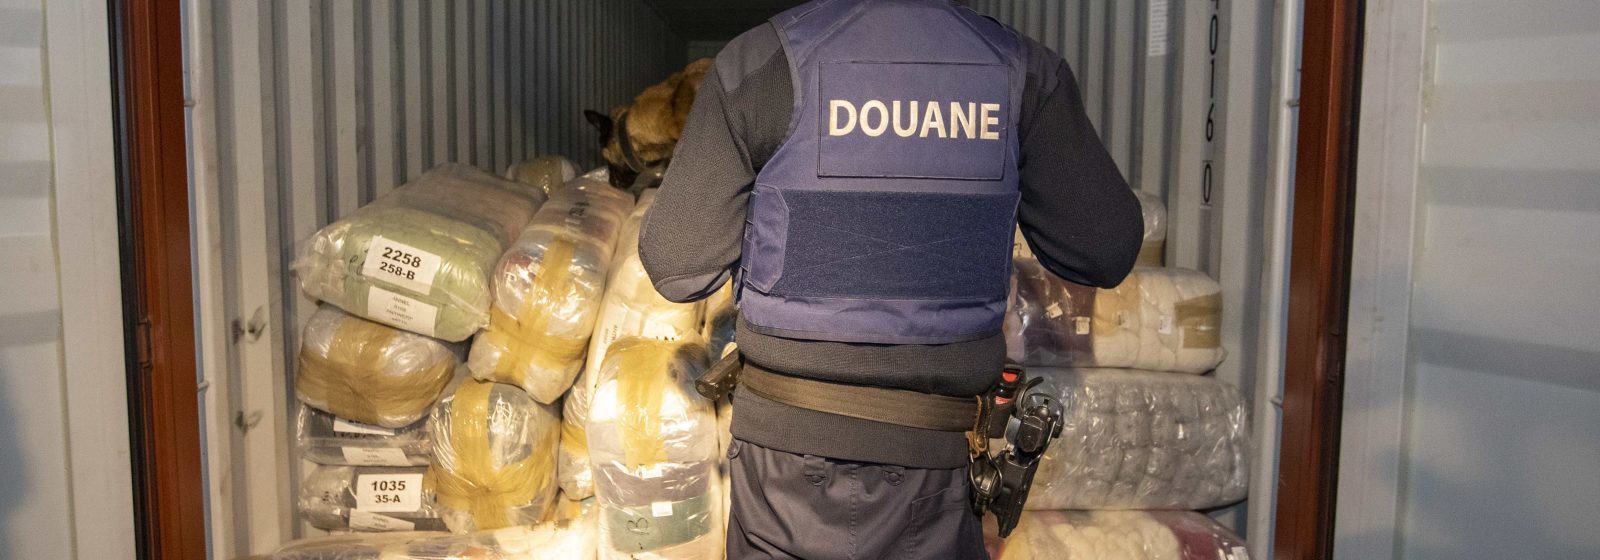 Demonstratie: zoeken drugs in container